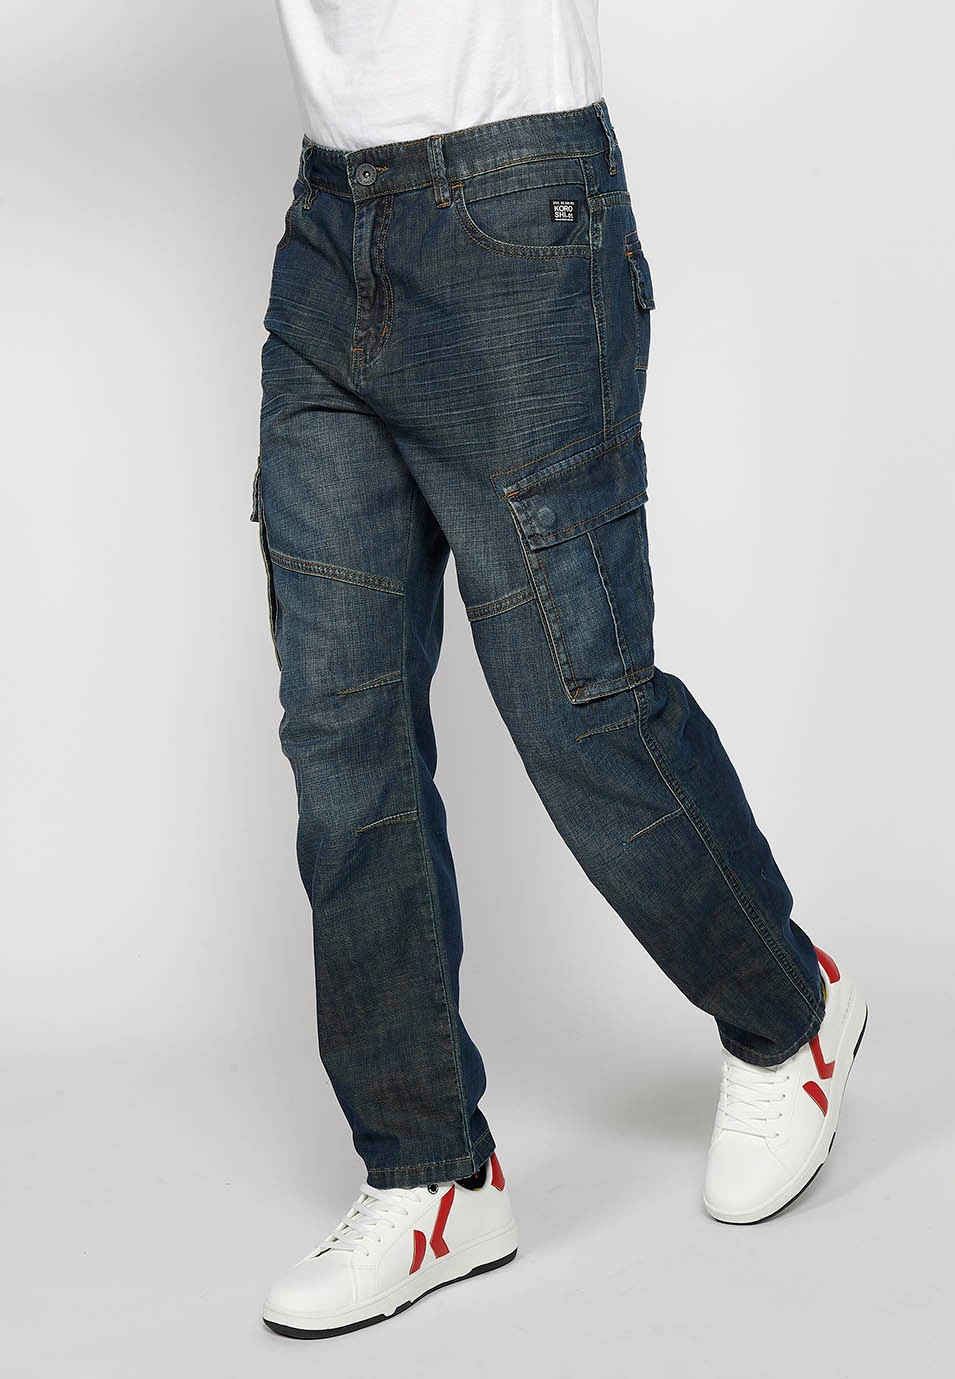 Pantalons càrrec llarg amb Tancament davanter amb cremallera i botó amb Butxaques laterals amb solapa de Color Blau Fosc per a Home 3